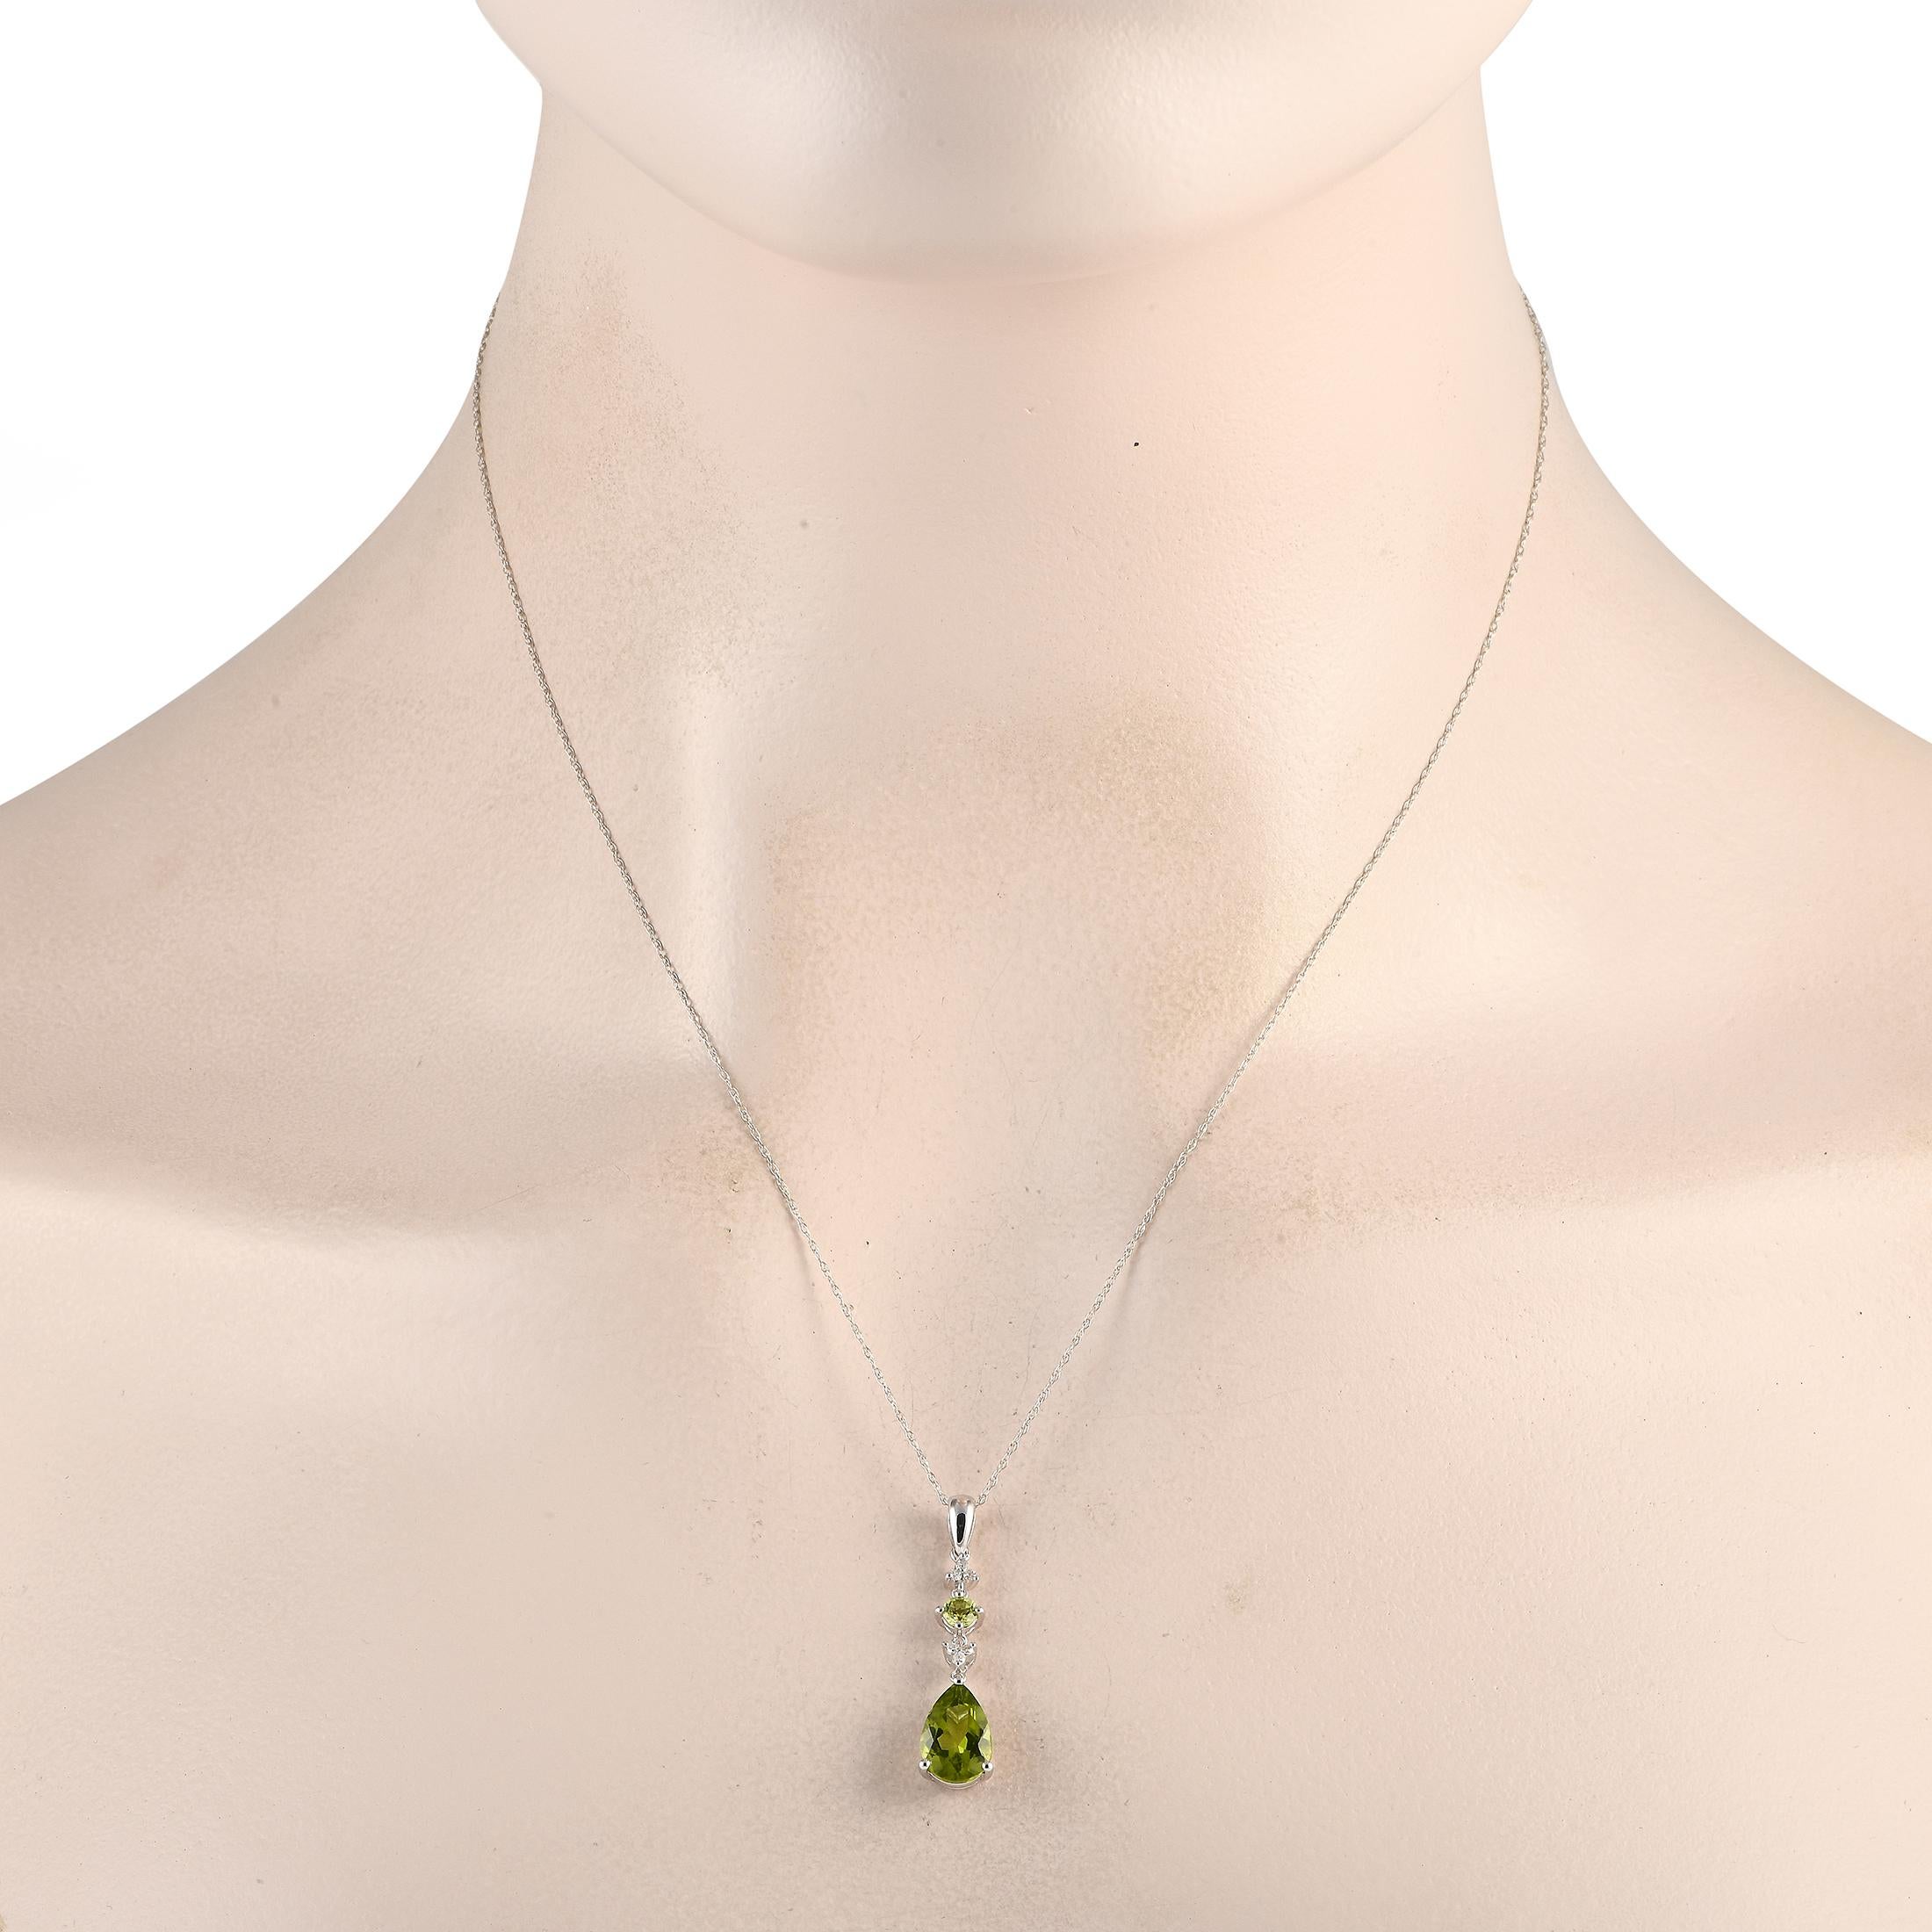 Ein Paar Peridot-Edelsteine mit einem bezaubernden grünen Farbton machen diese Halskette einfach unvergesslich. Der filigrane Anhänger aus 14-karätigem Weißgold ist 1,25 cm lang und 0,25 cm breit und hängt an einer 18er Kette. Es kommt auch komplett